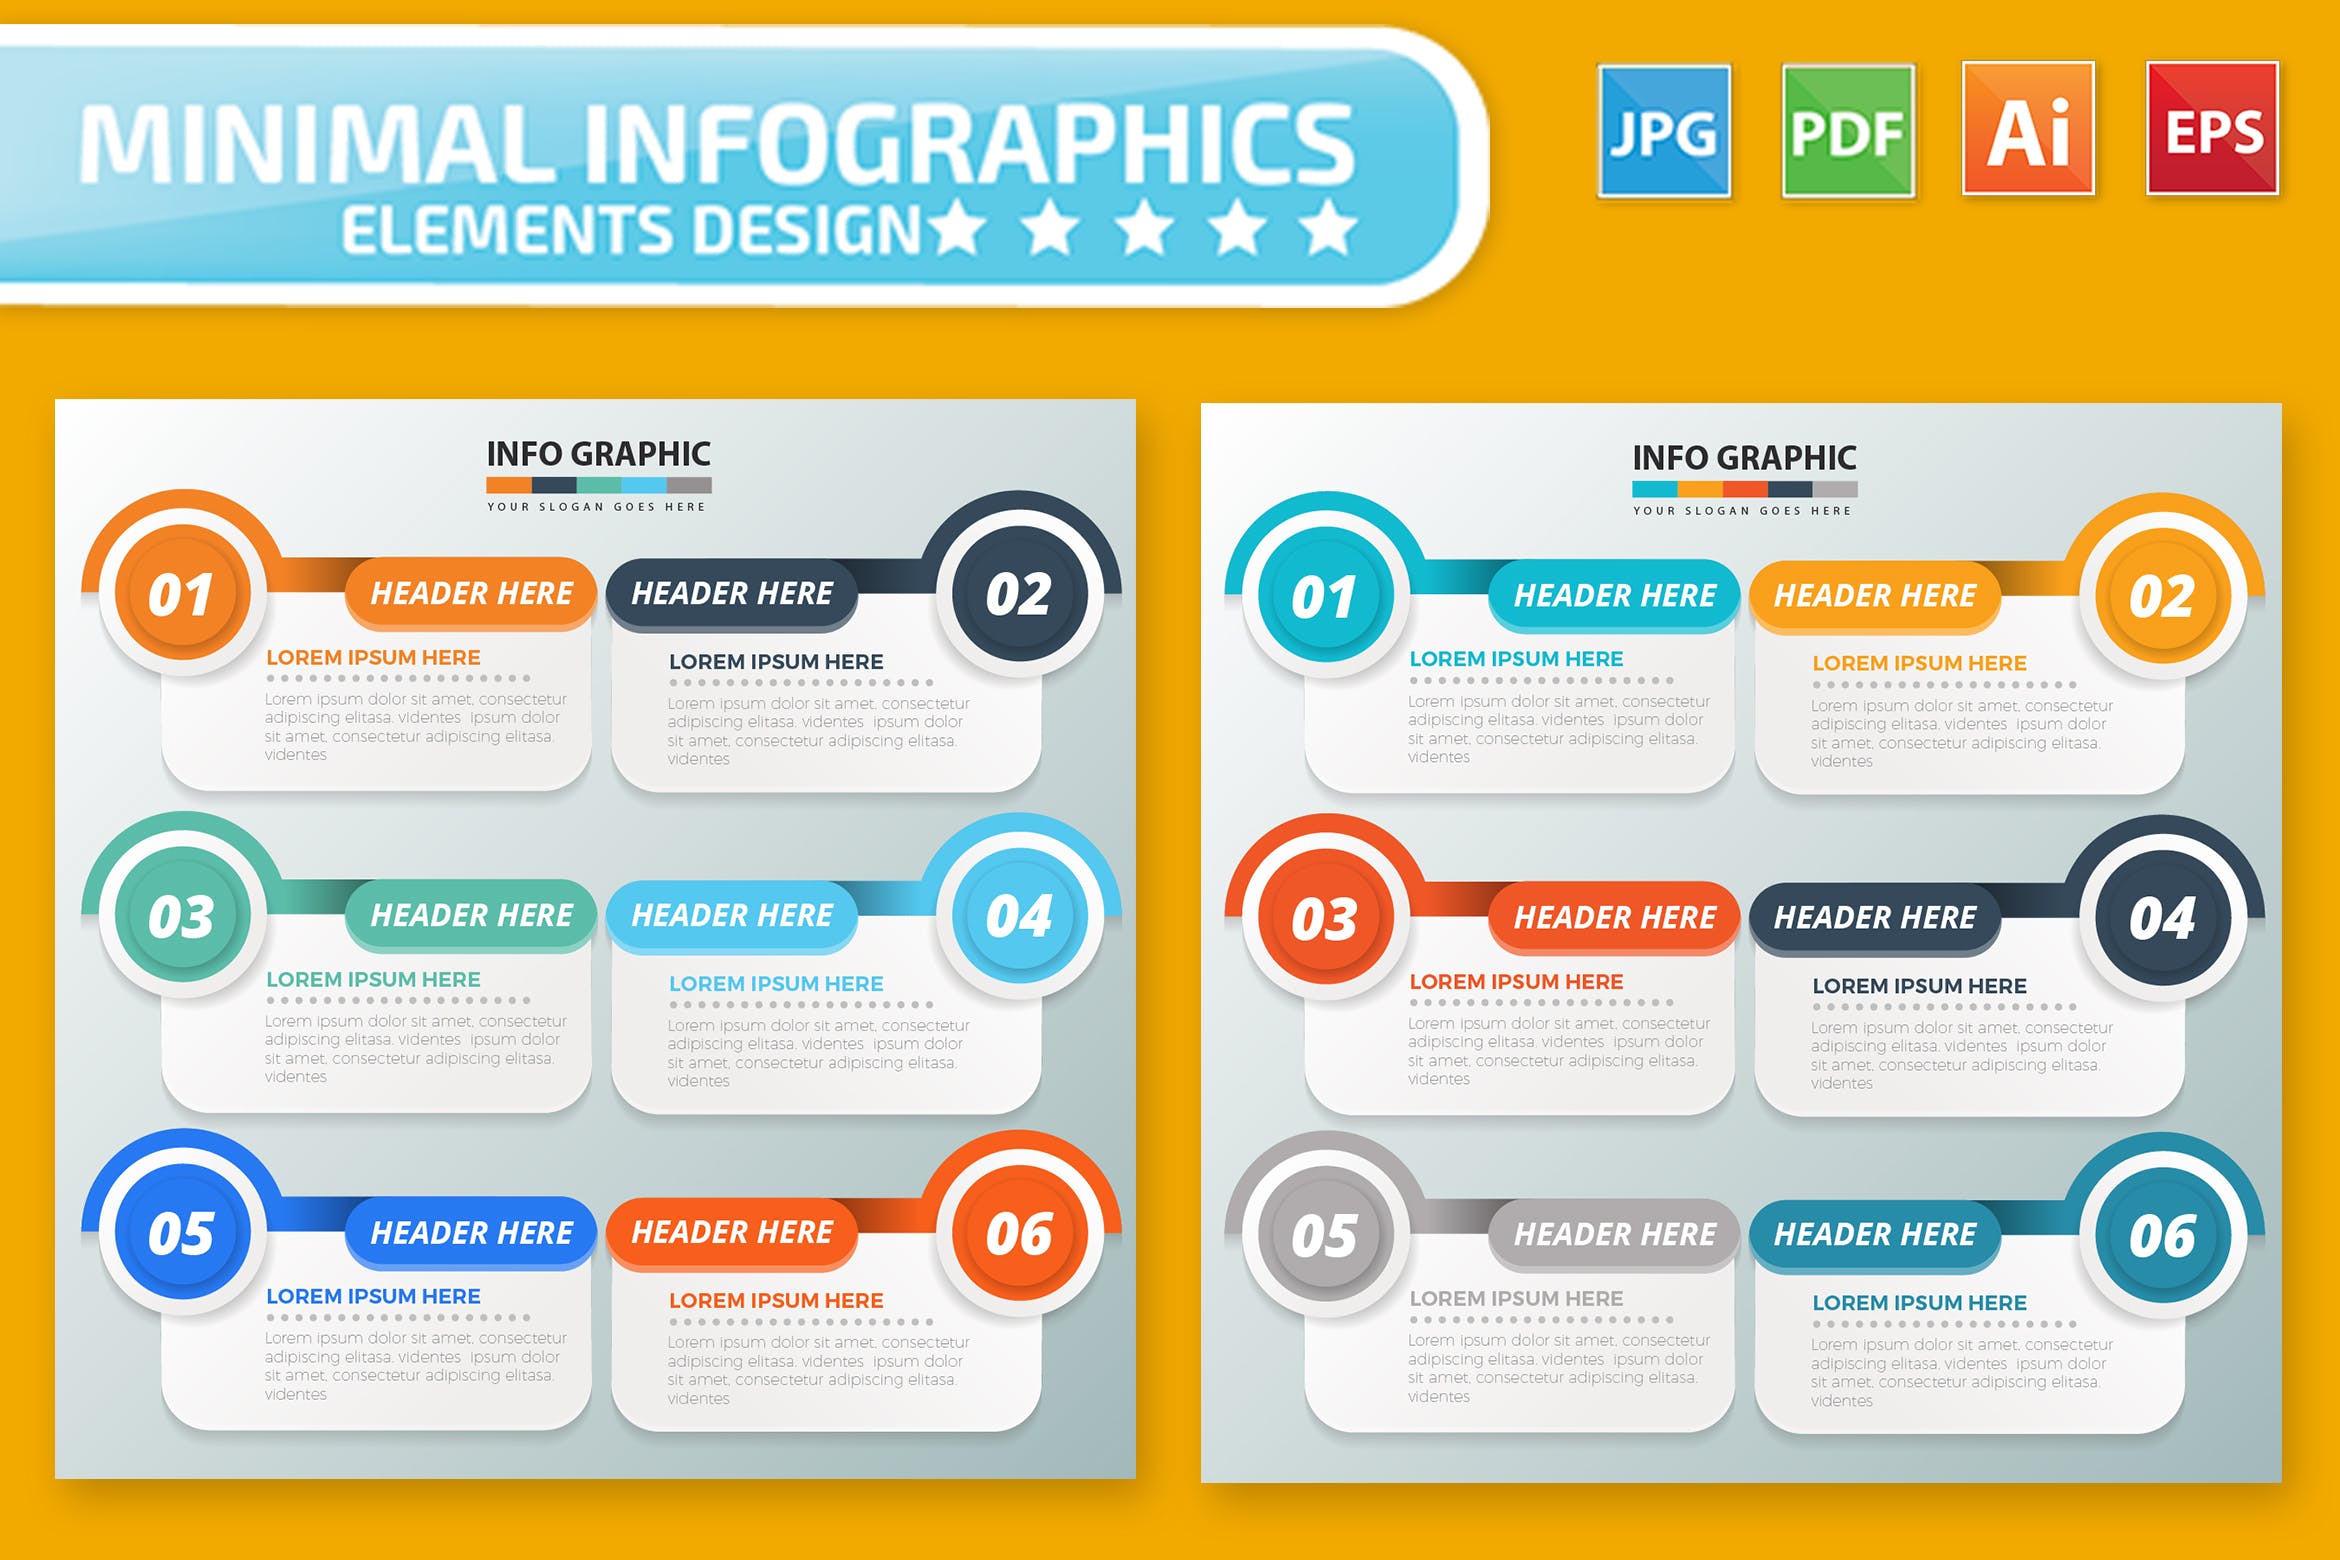 PPT幻灯片步骤要点归纳信息图表设计素材 Infographic Elements插图